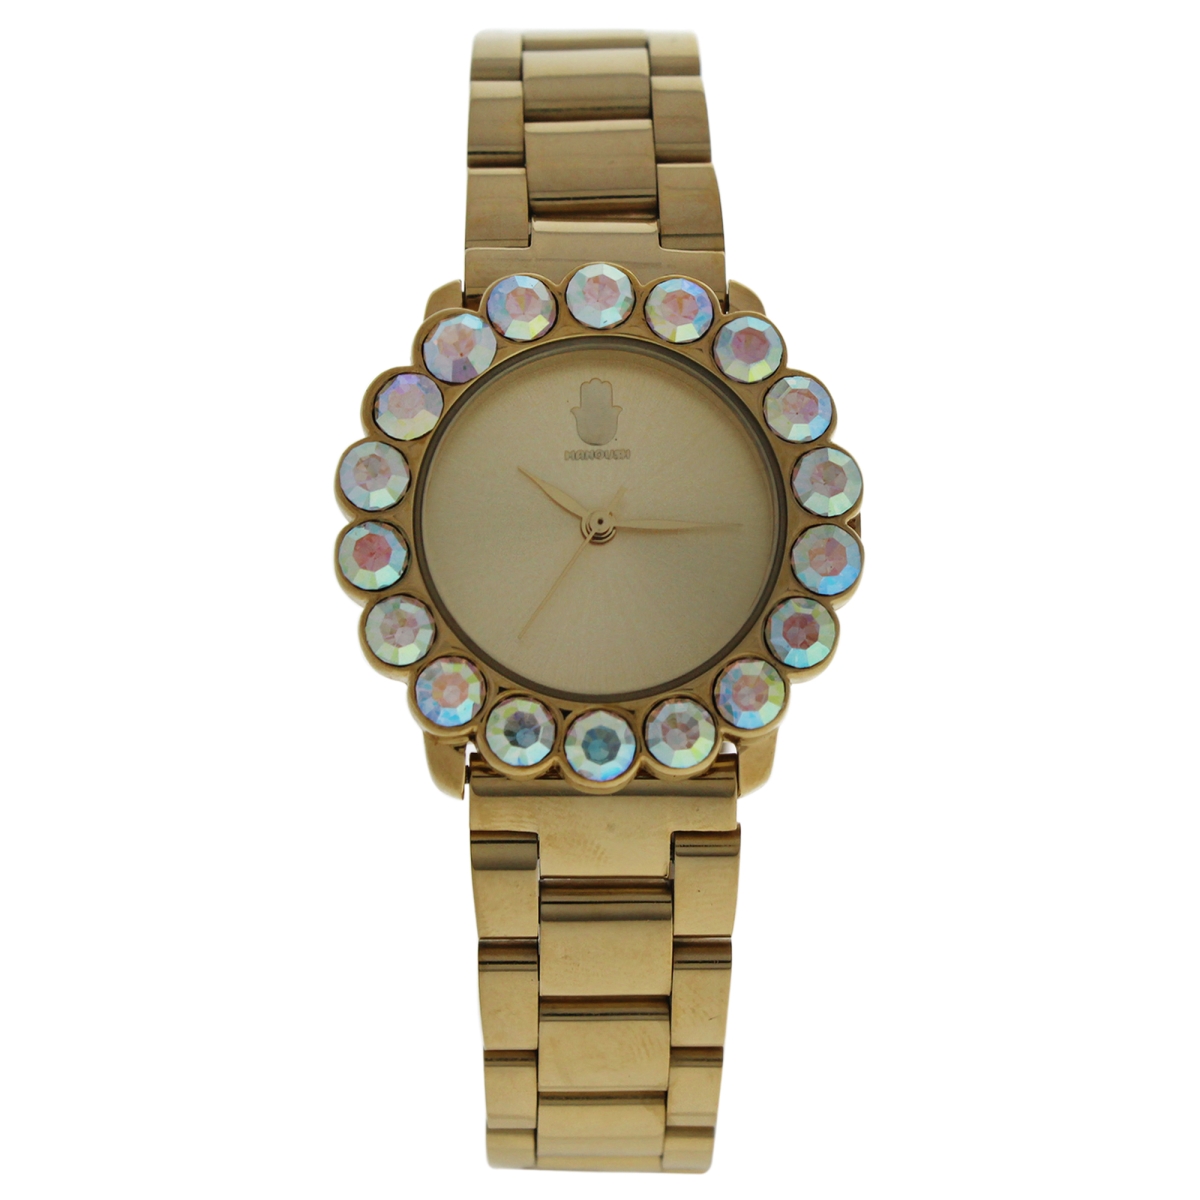 W-wat-1503 Mshscg-2 Scarlett - Stainless Steel Bracelet Watch For Women, Gold